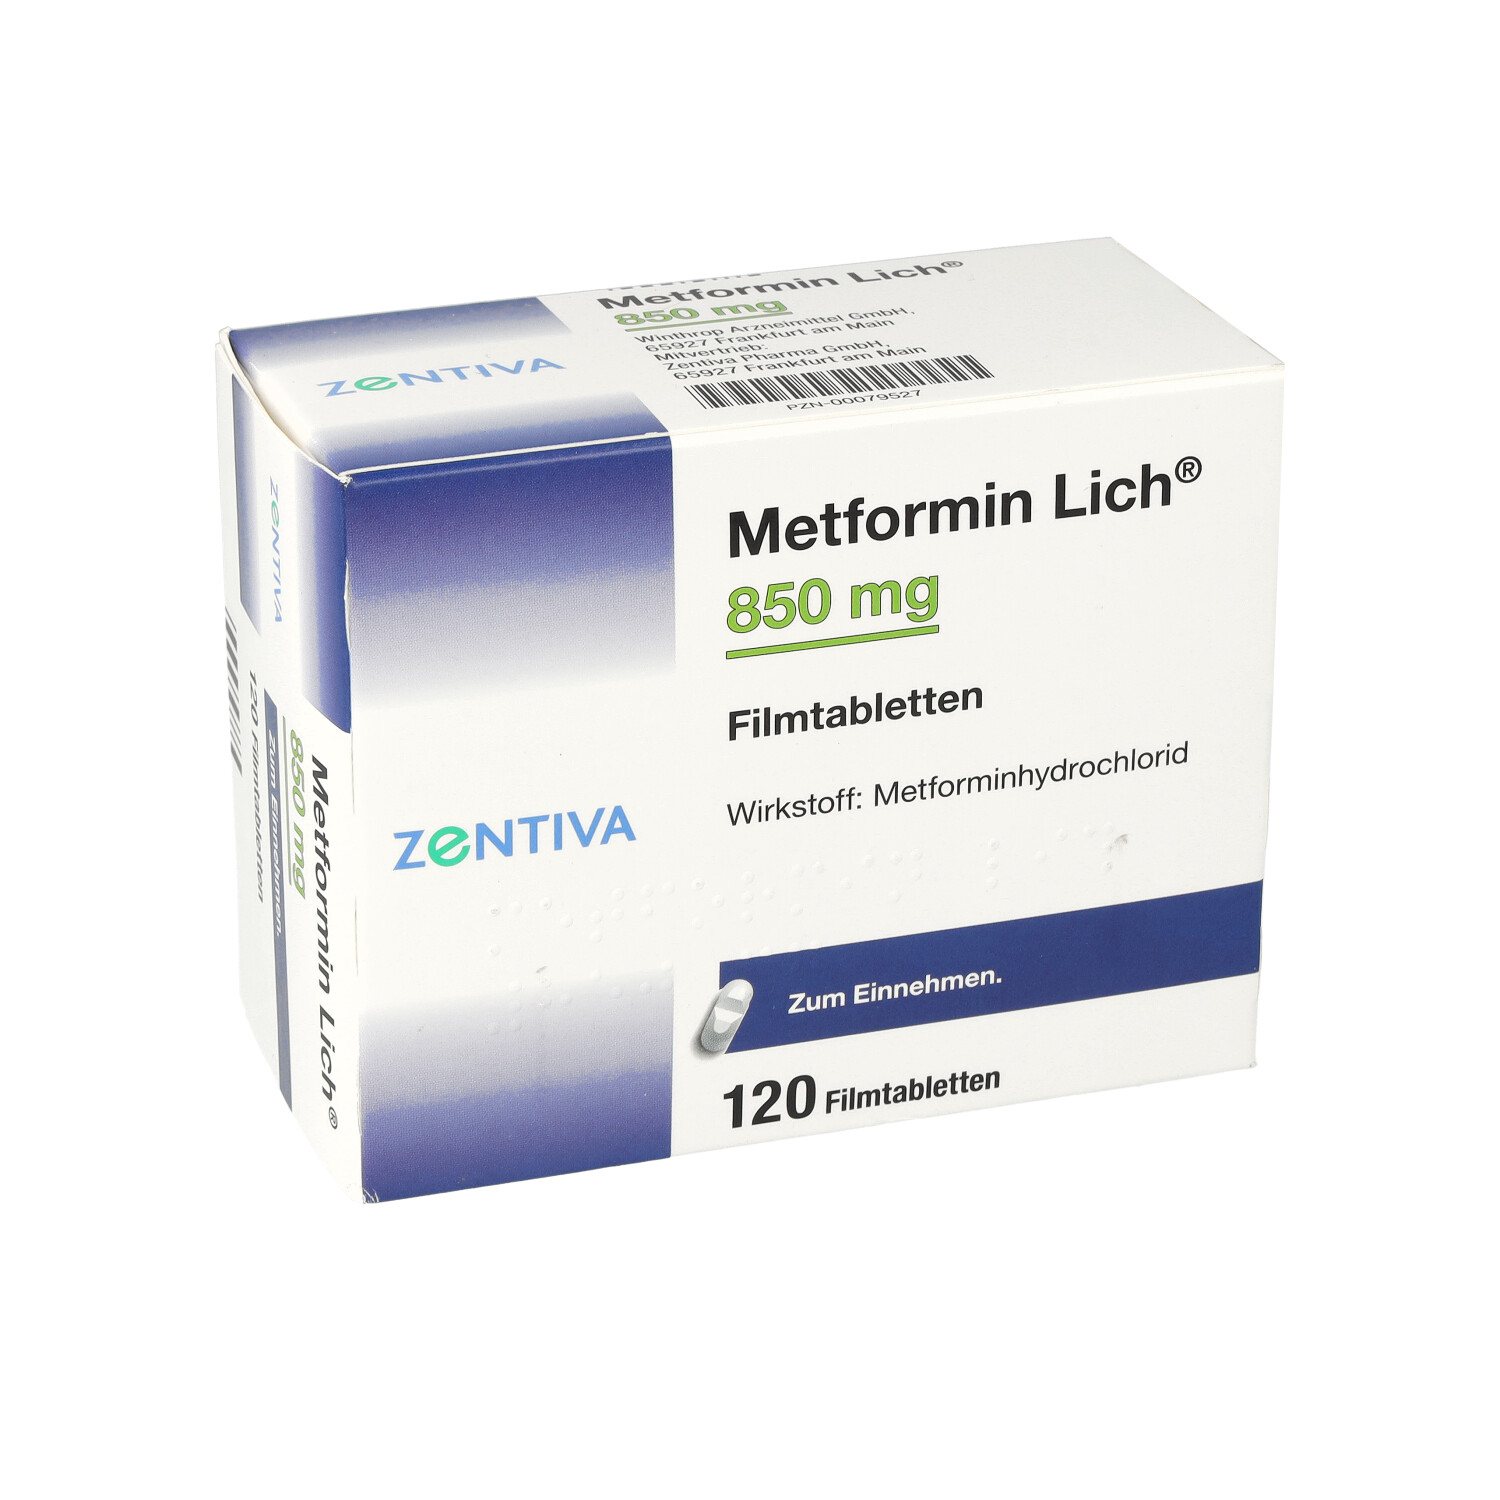 METFORMIN Lich 850 mg Filmtabletten